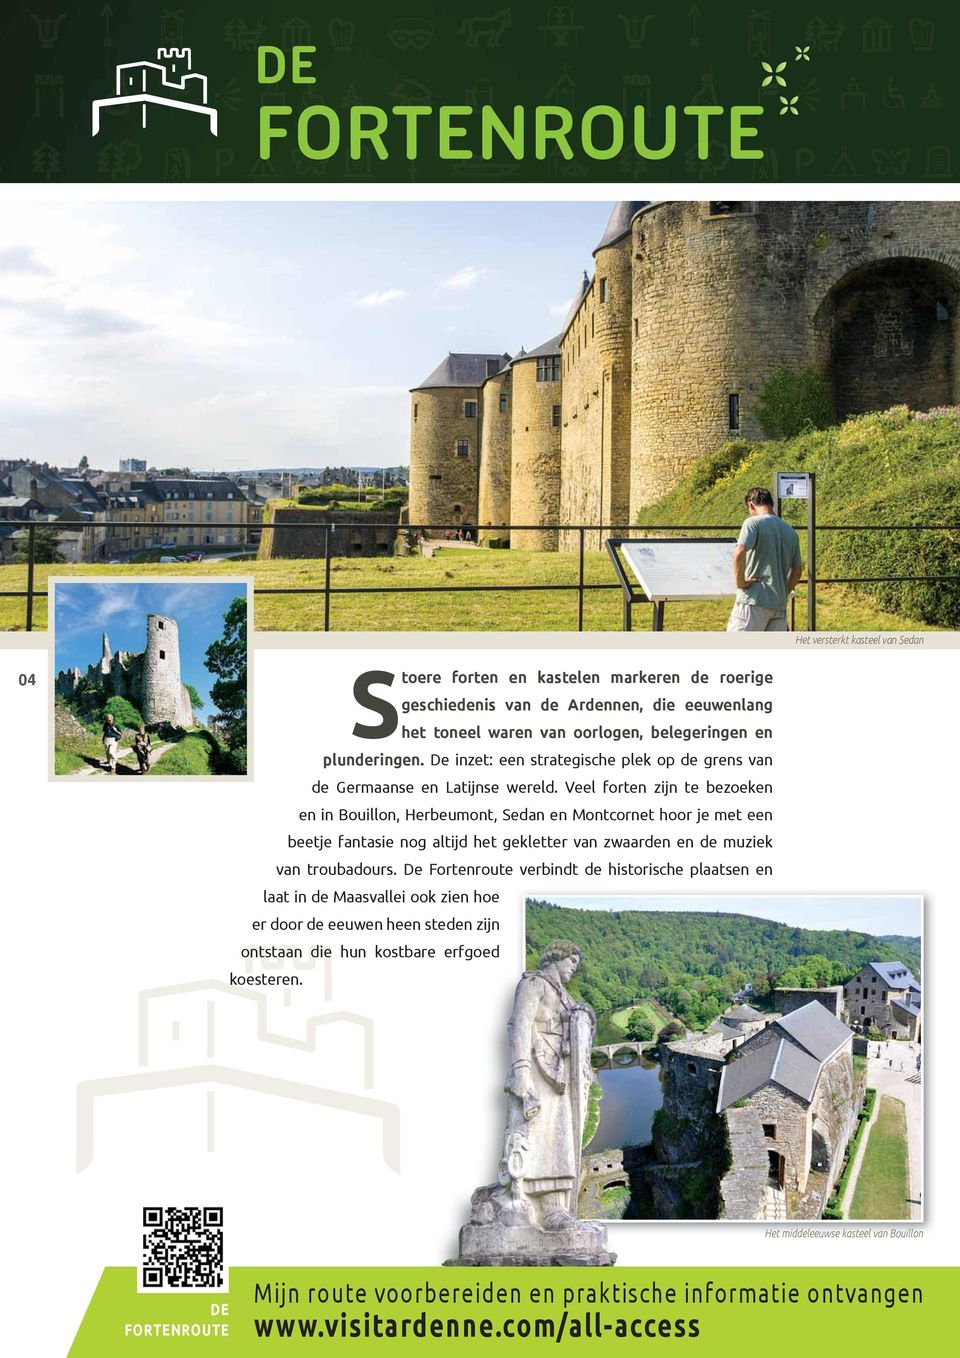 Veel forten zijn te bezoeken en in Bouillon, Herbeumont, Sedan en Montcornet hoor je met een beetje fantasie nog altijd het gekletter van zwaarden en de muziek van troubadours.